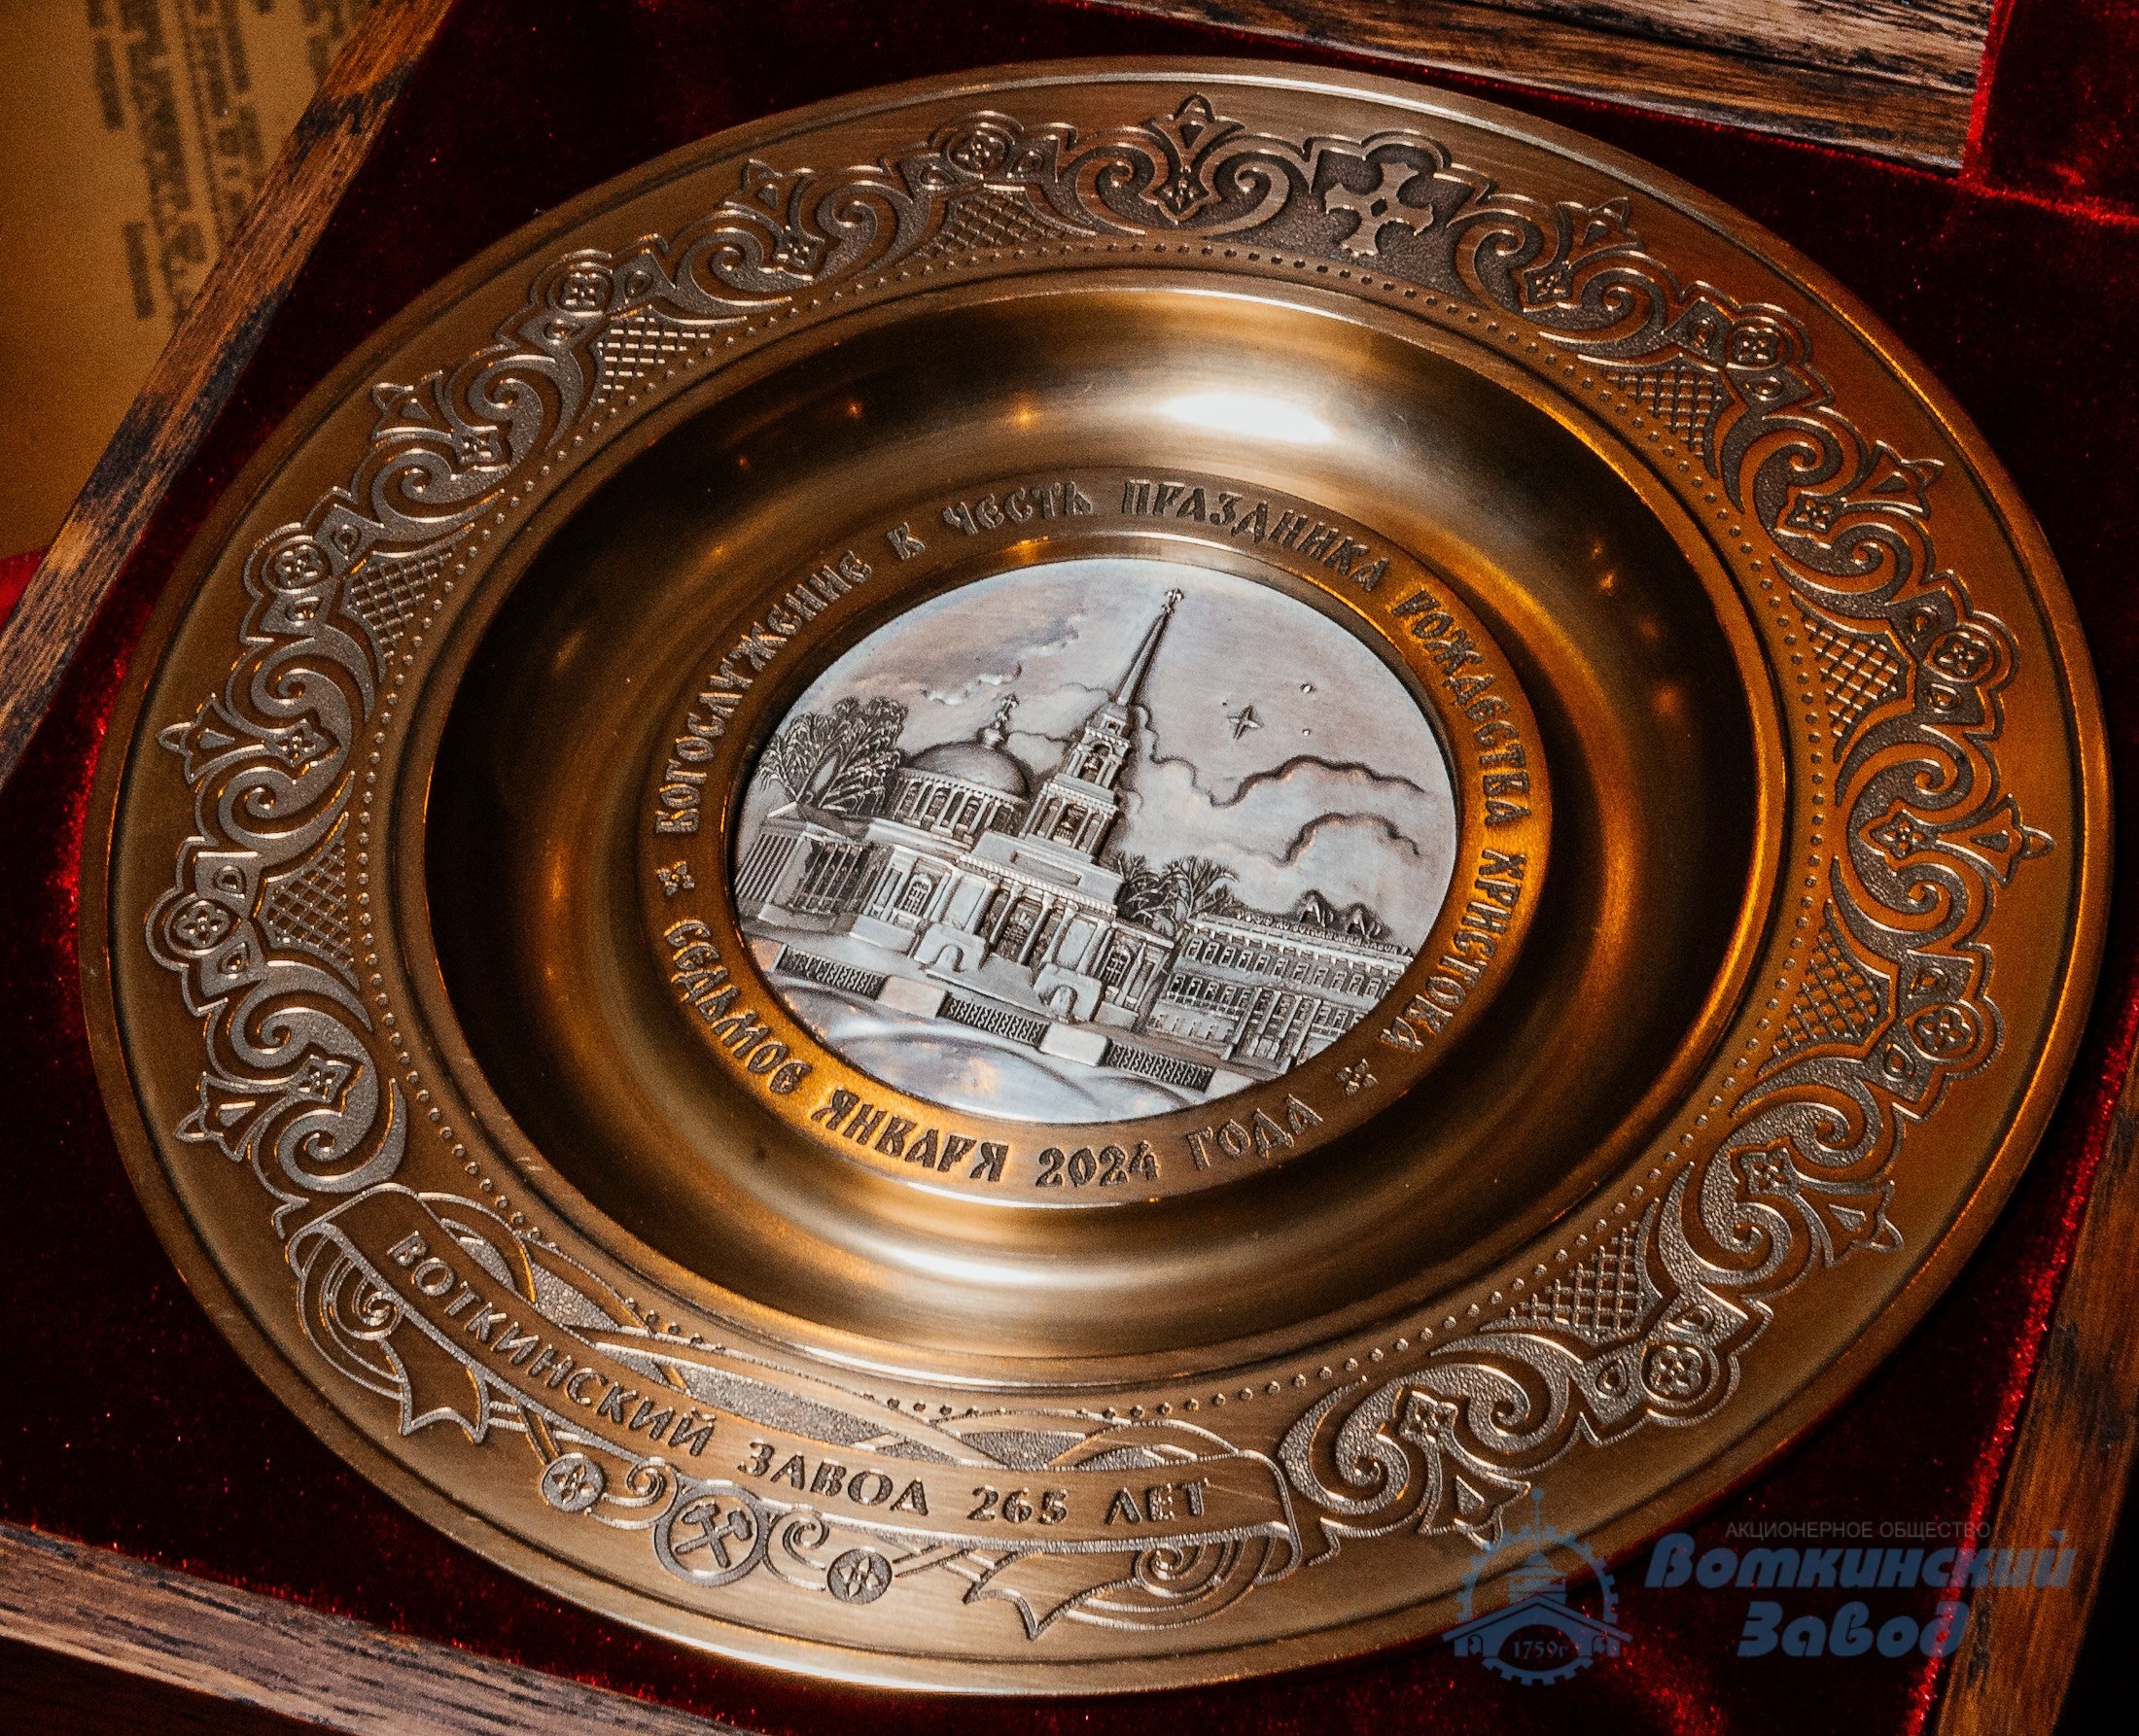 Воткинский завод преподнёс в дар Благовещенскому собору декорированное бронзовое блюдо